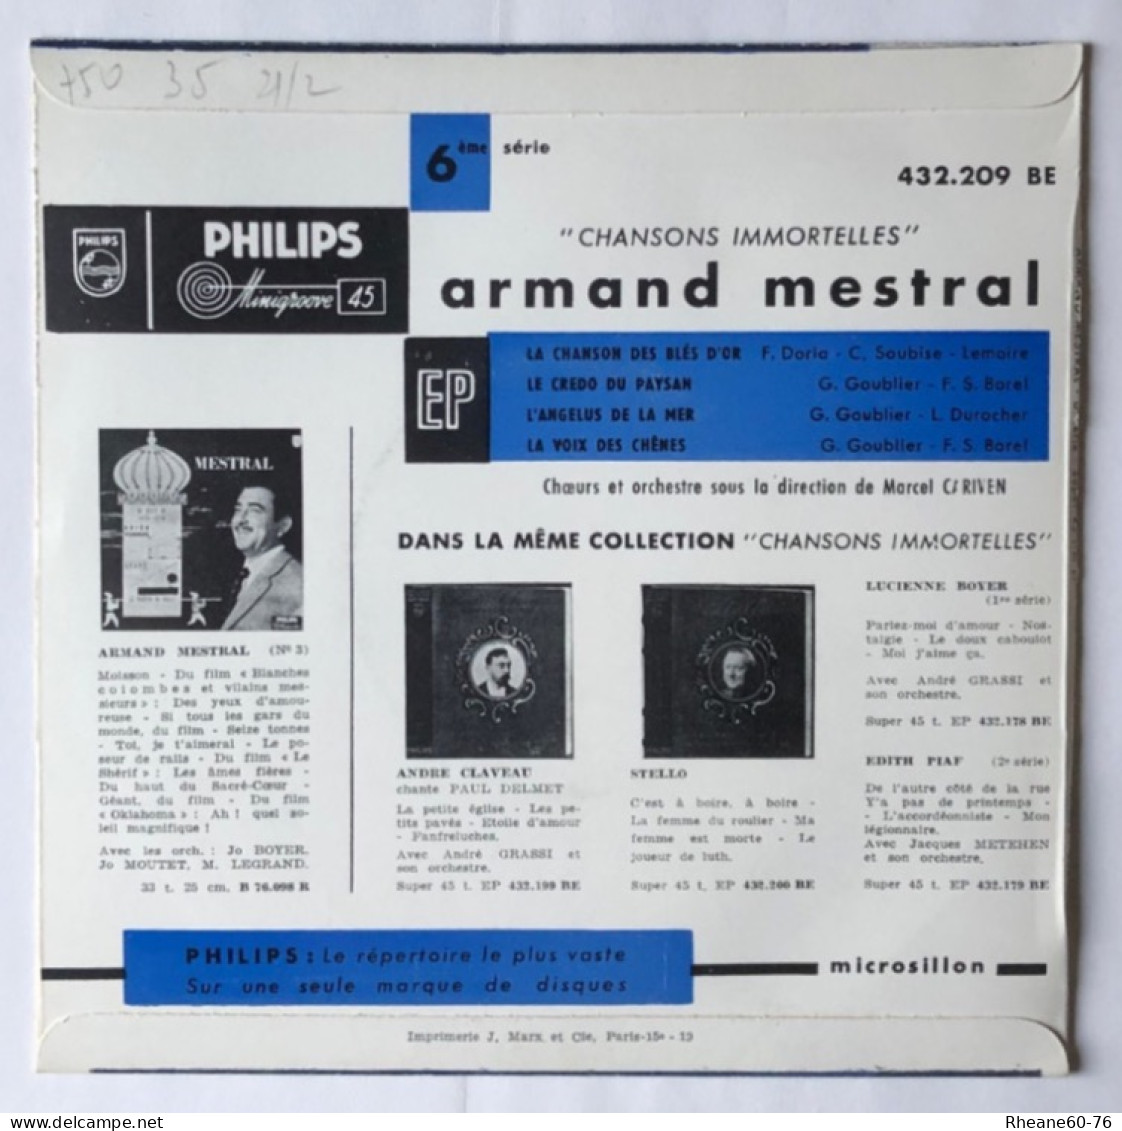 Philips 432.209 BE - 45T EP - Armand Mestral Orchestre Marcel Cariven - Microsillon Médium Haute Fidélité - Speciale Formaten